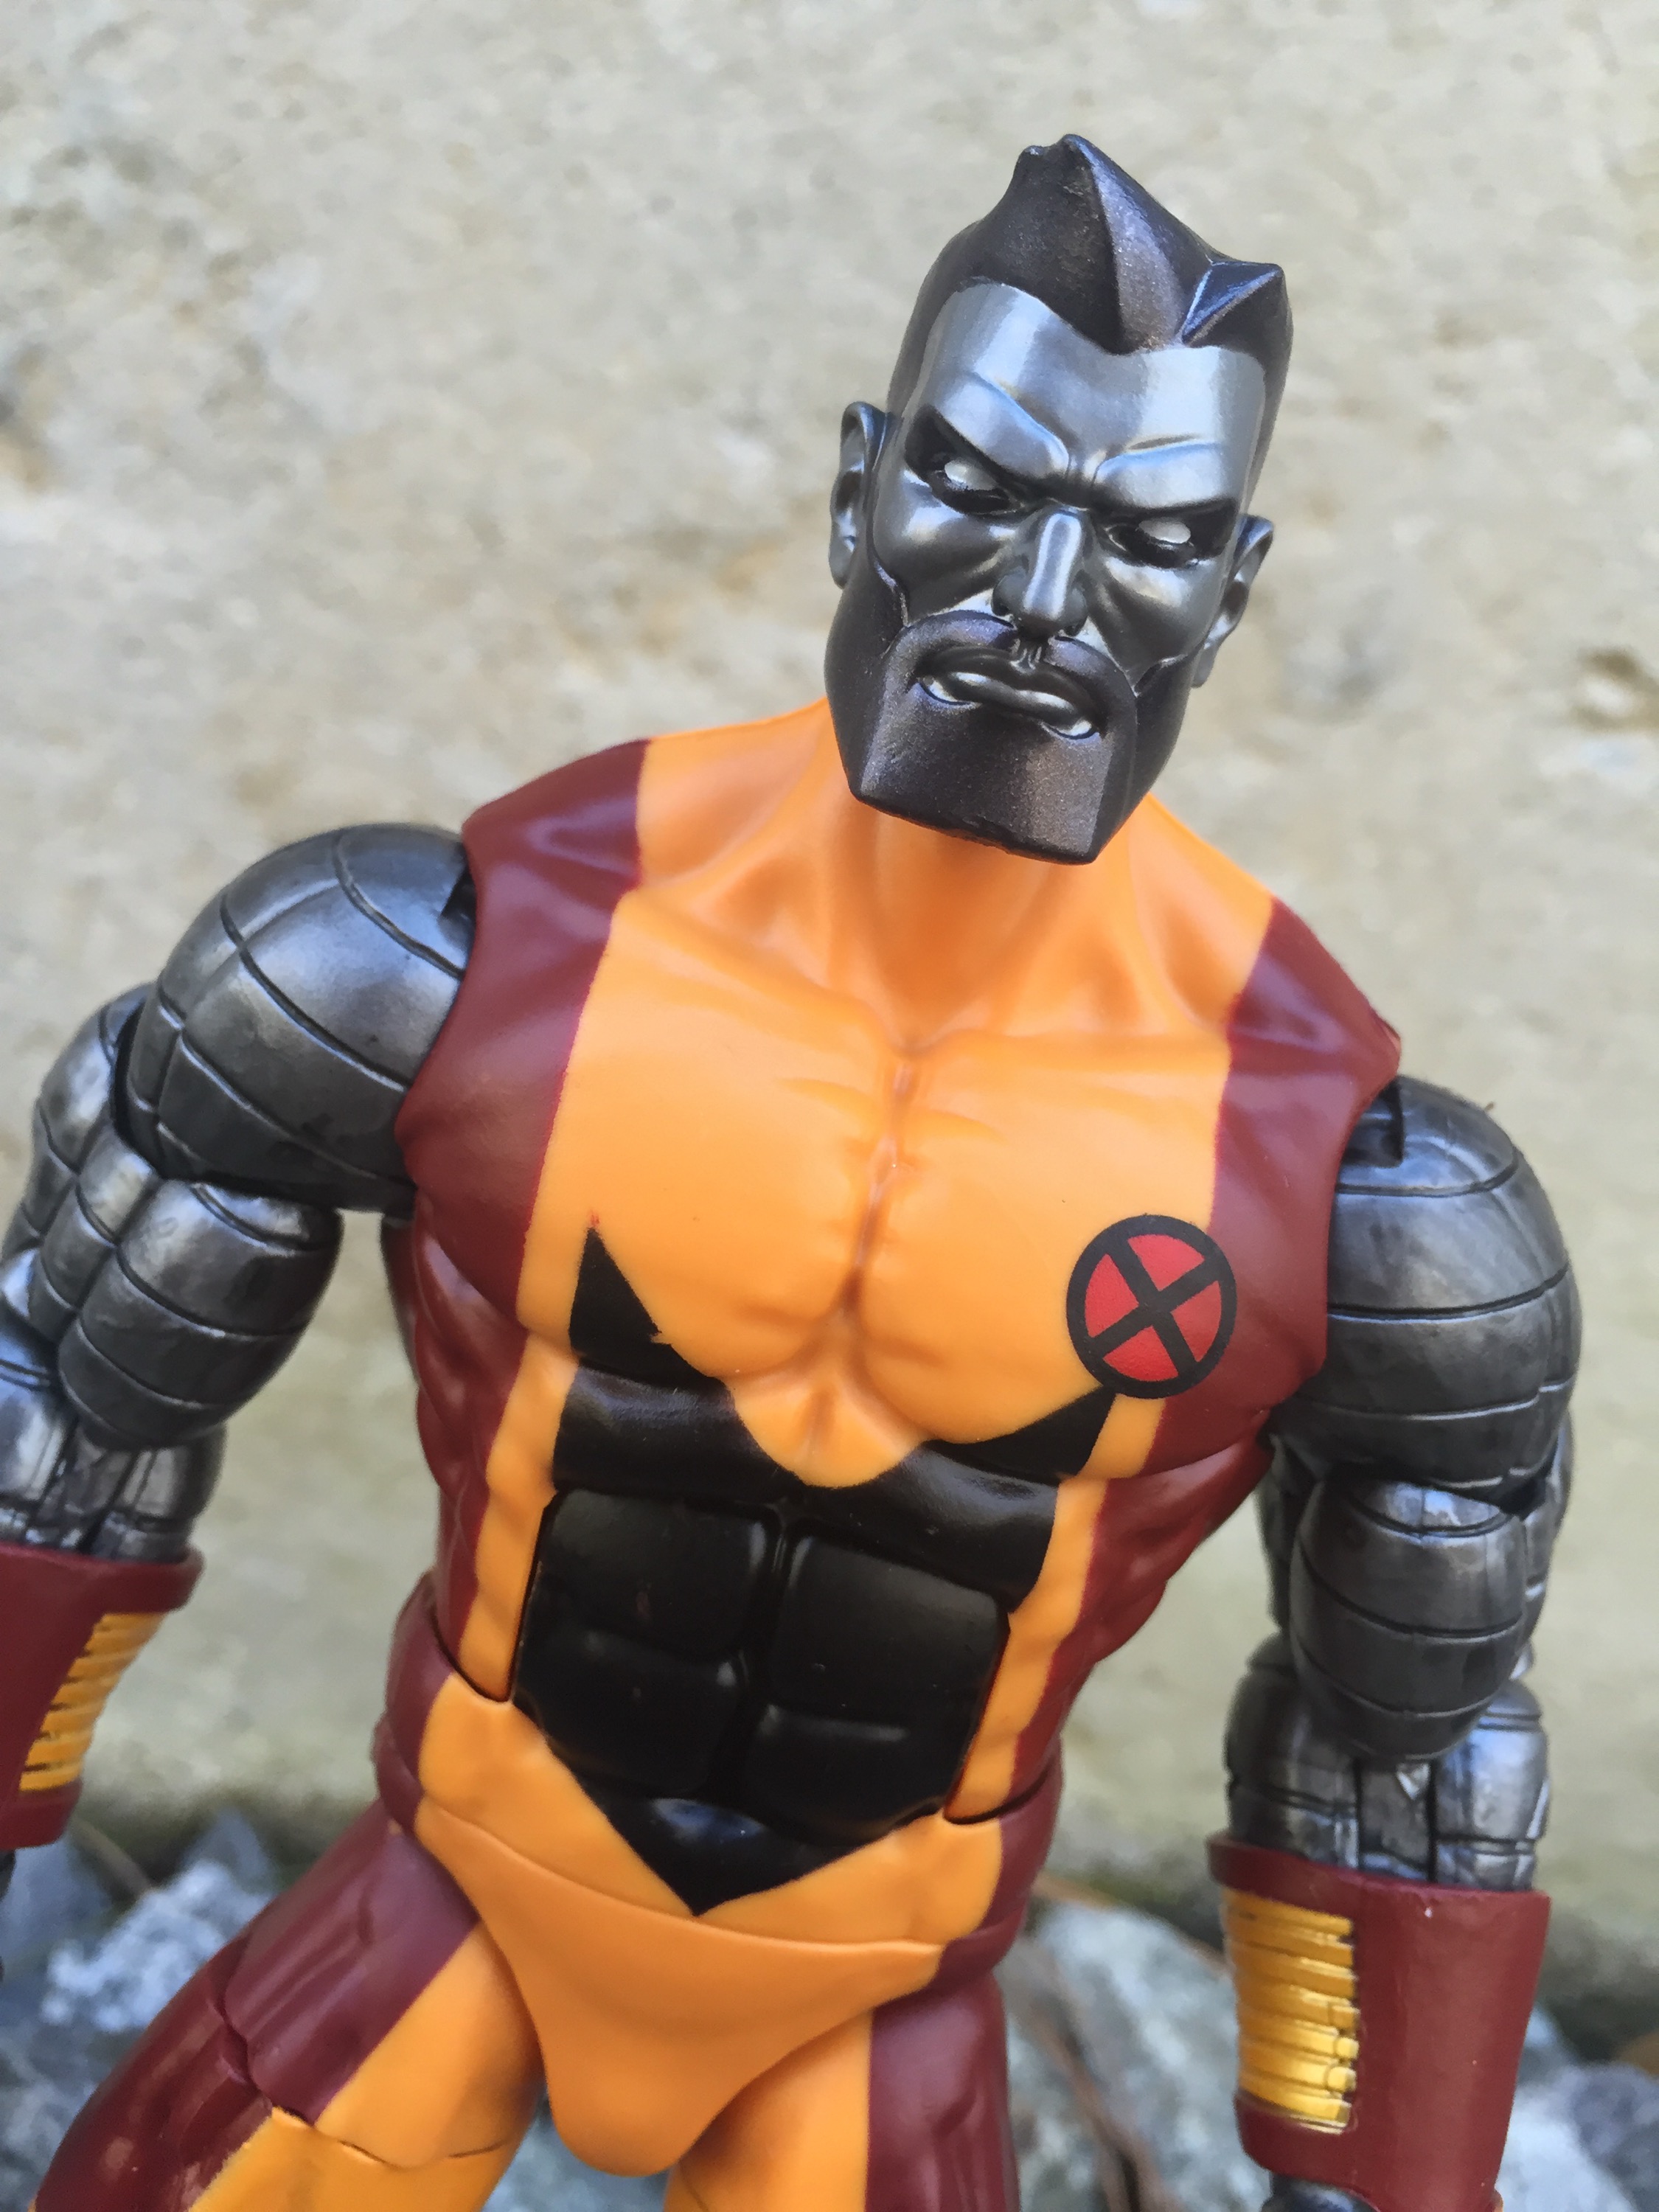 2017 Marvel Legends X-men Warlock BAF Series Colossus 6 Inch Figure for sale online 